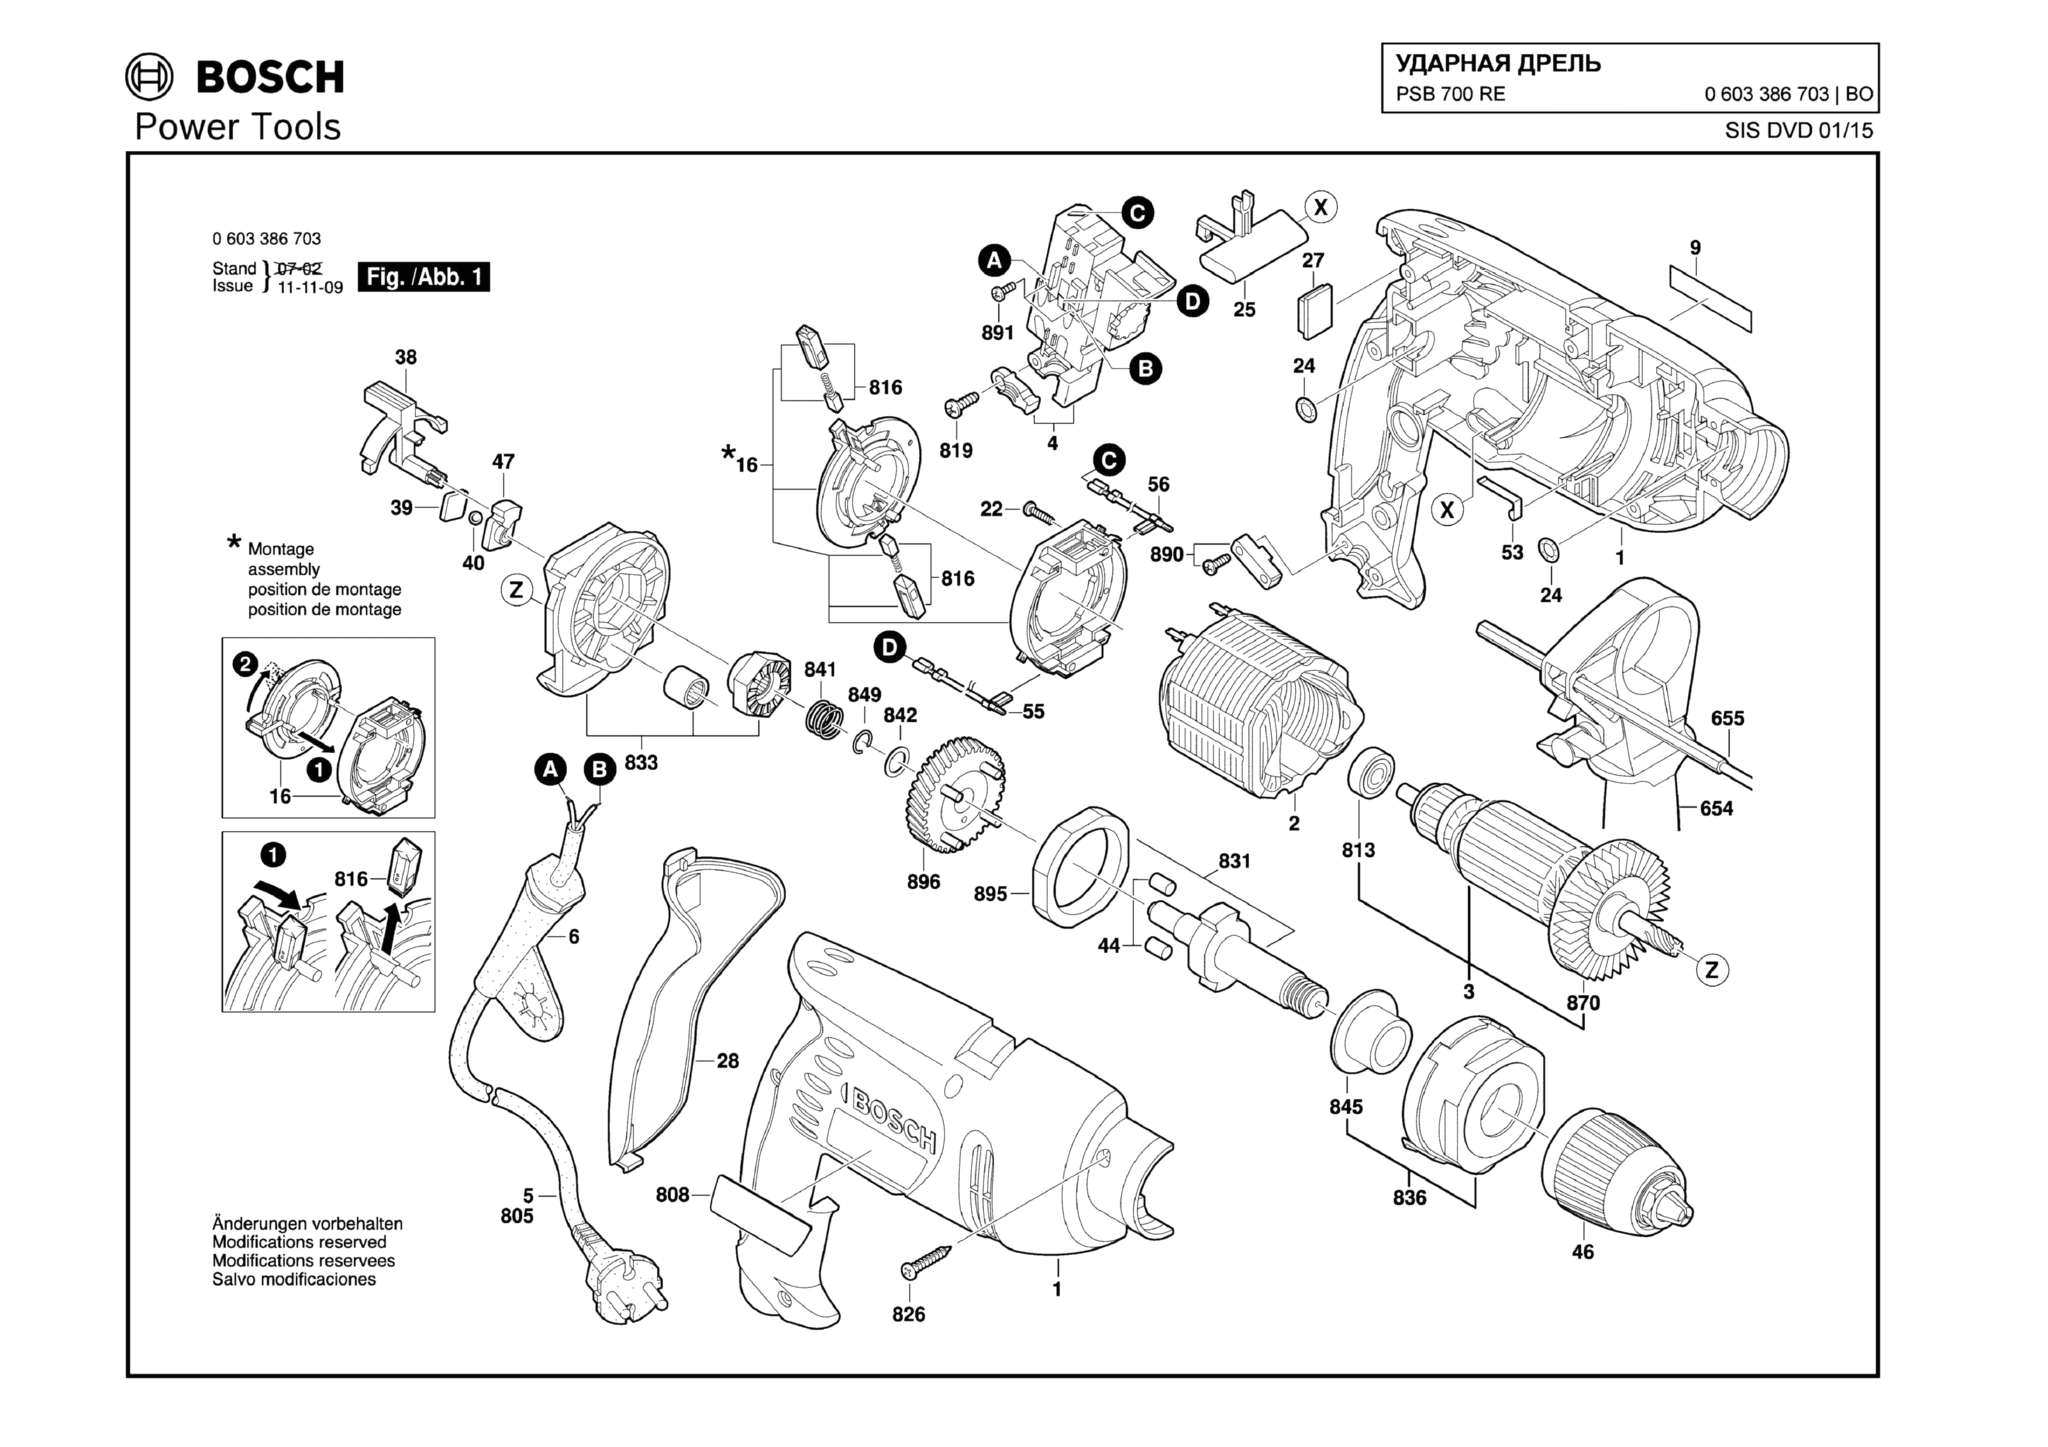 Запчасти, схема и деталировка Bosch PSB 700 RE (ТИП 0603386703)